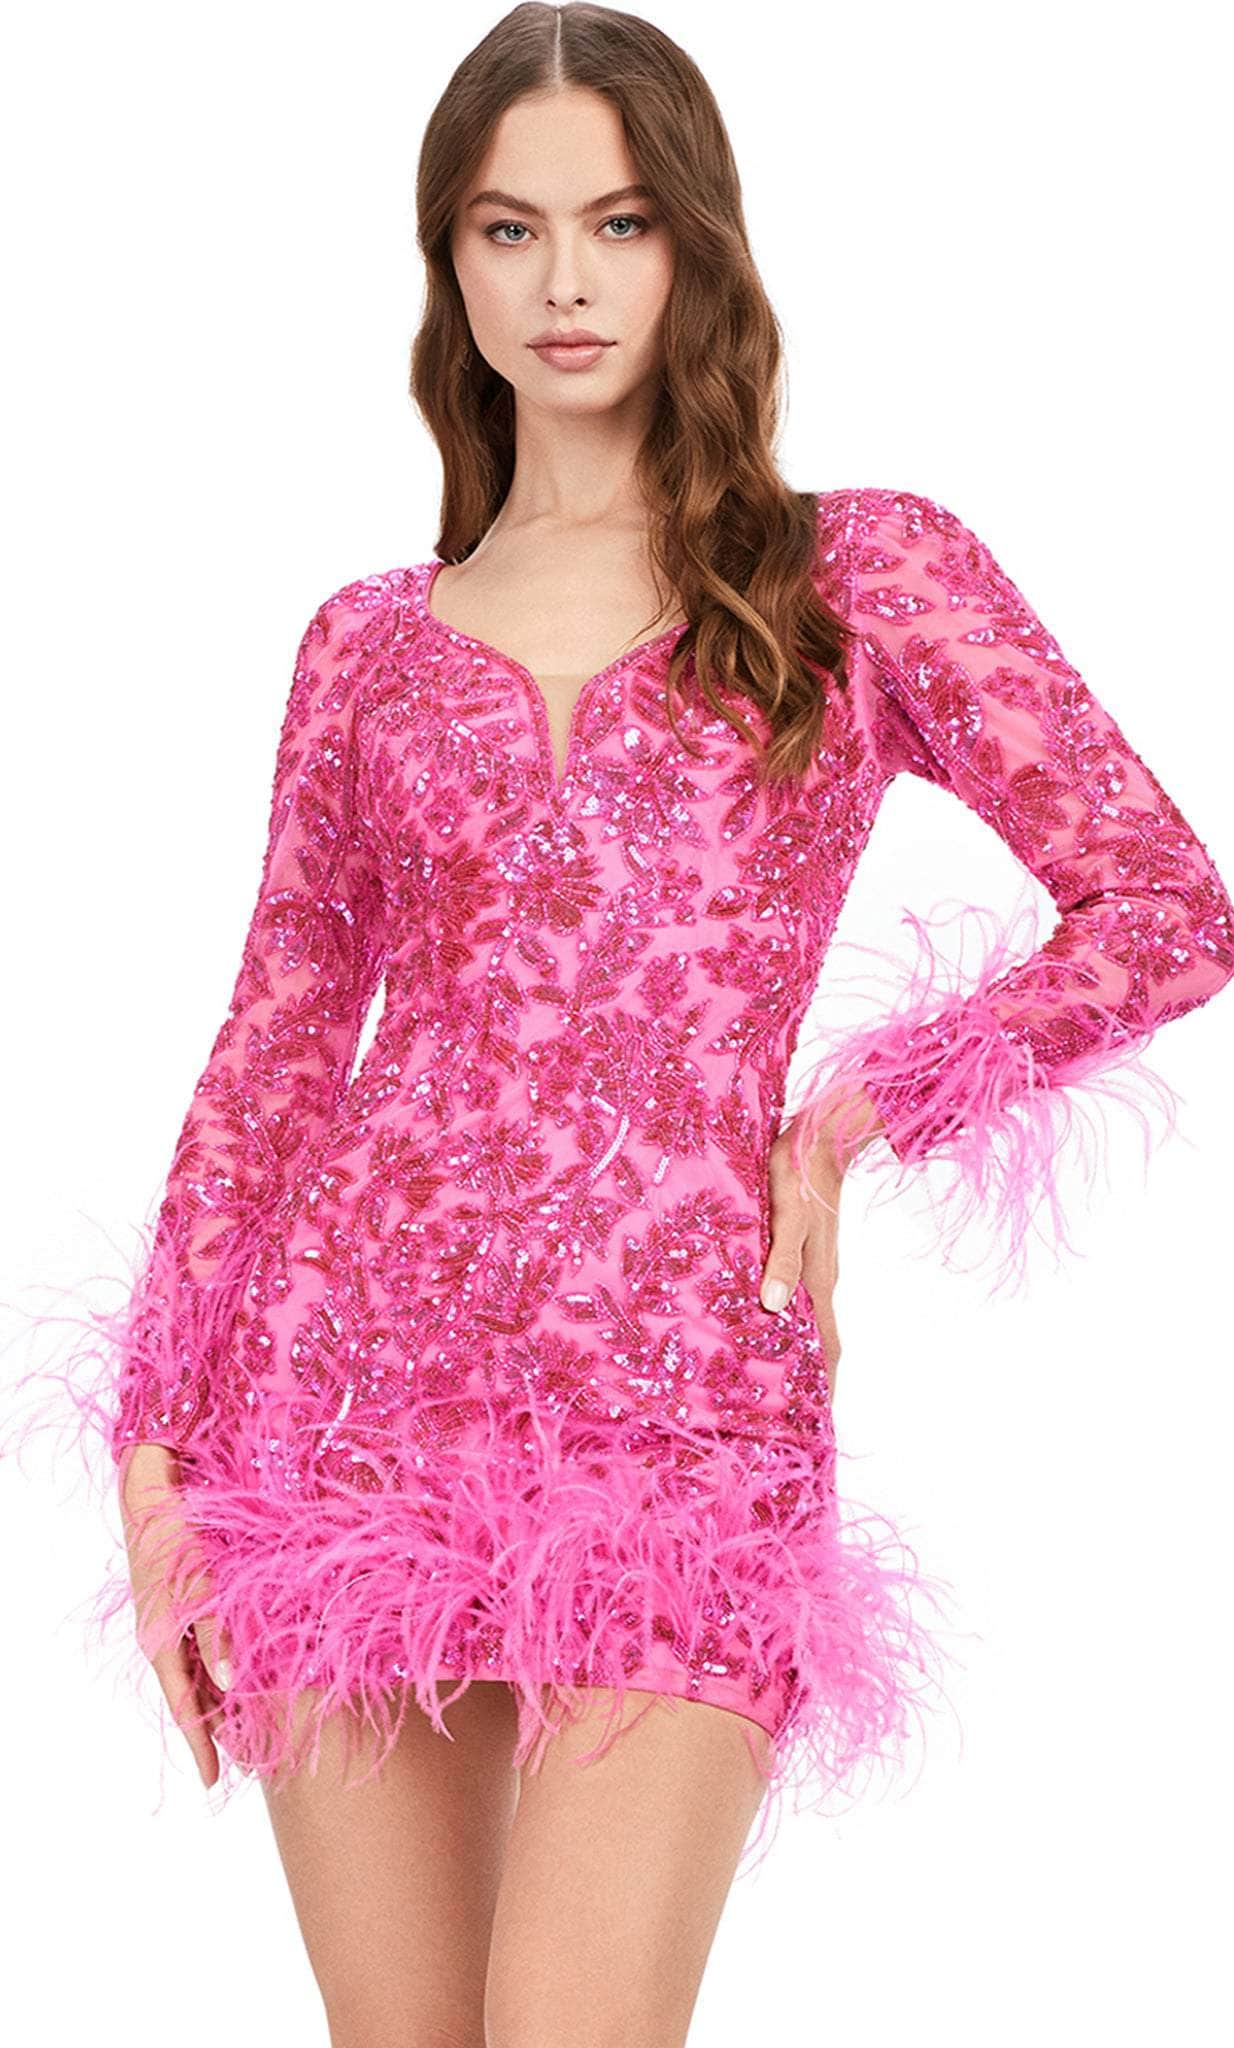 ashley lauren 4616 - sequin dress